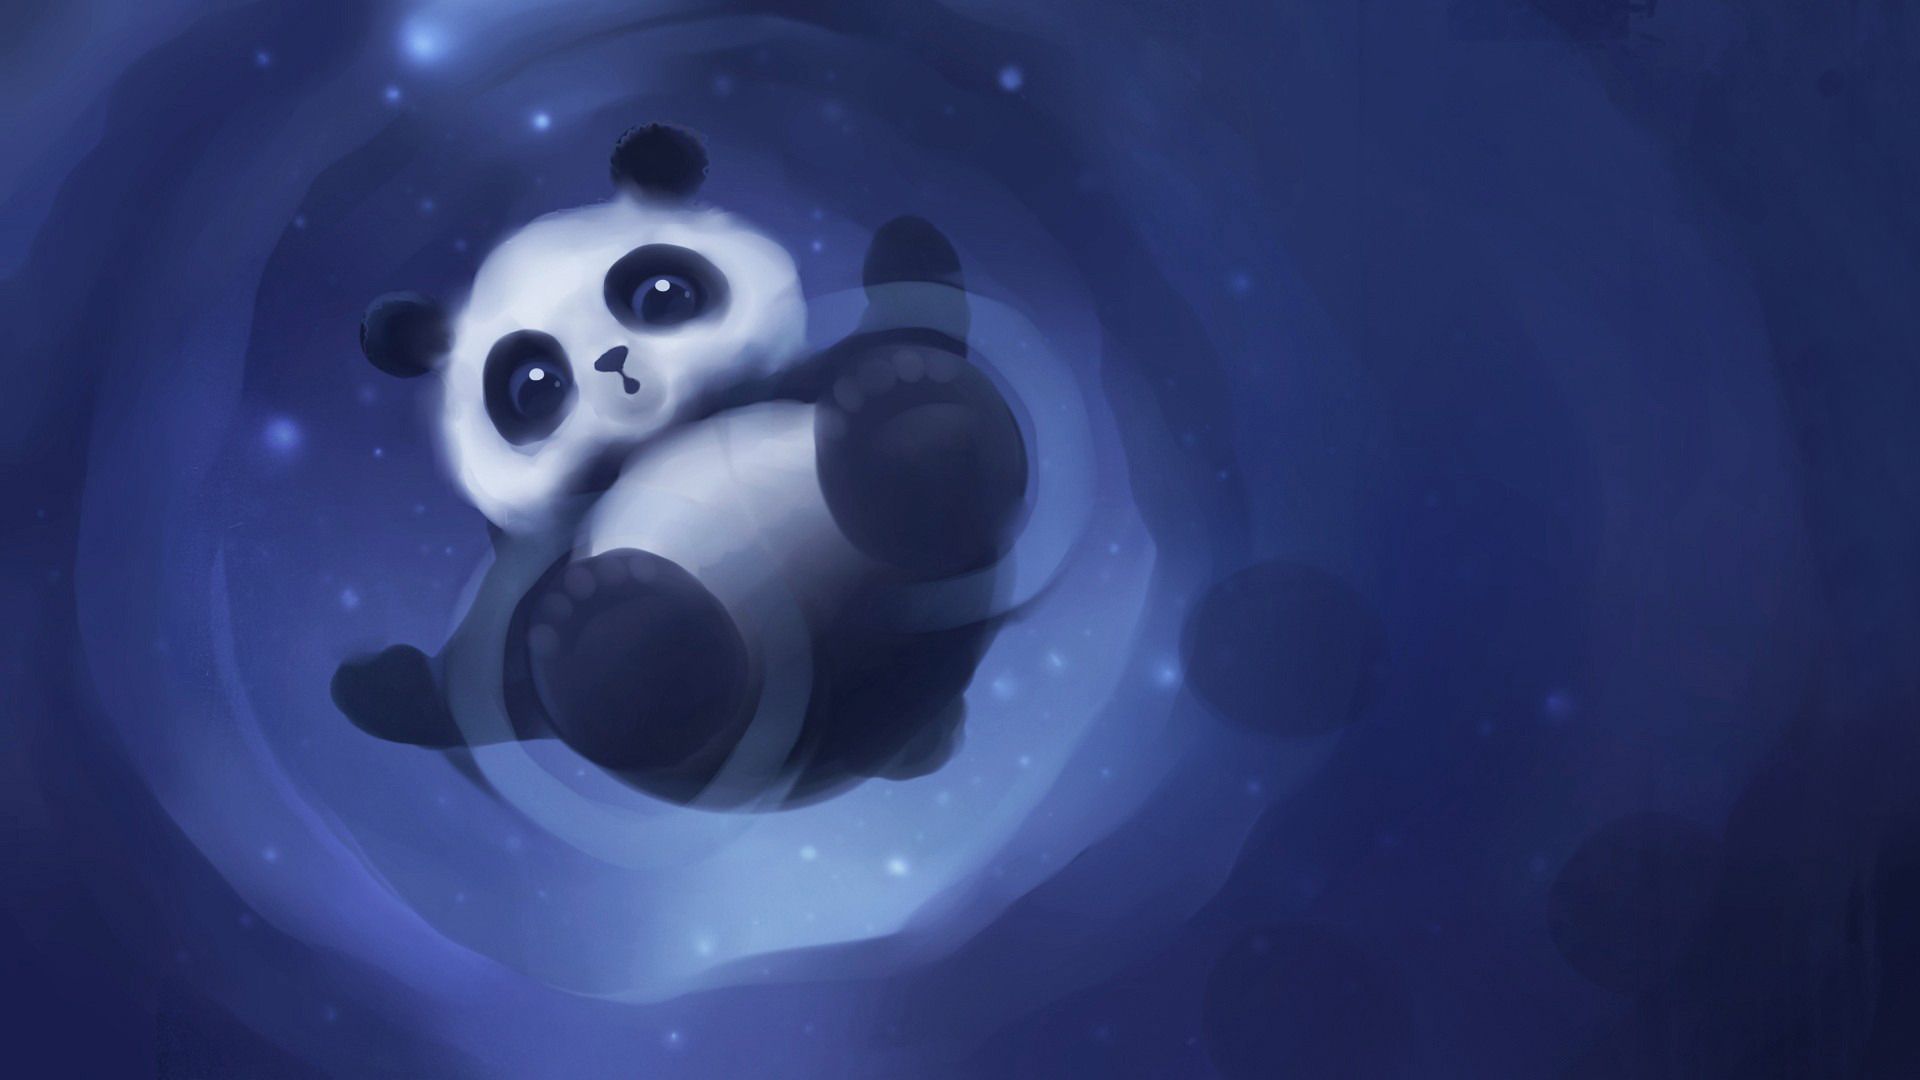 Panda Wallpaper. Cute Panda Wallpaper, Funny Panda Wallpaper and Panda Emoji Wallpaper